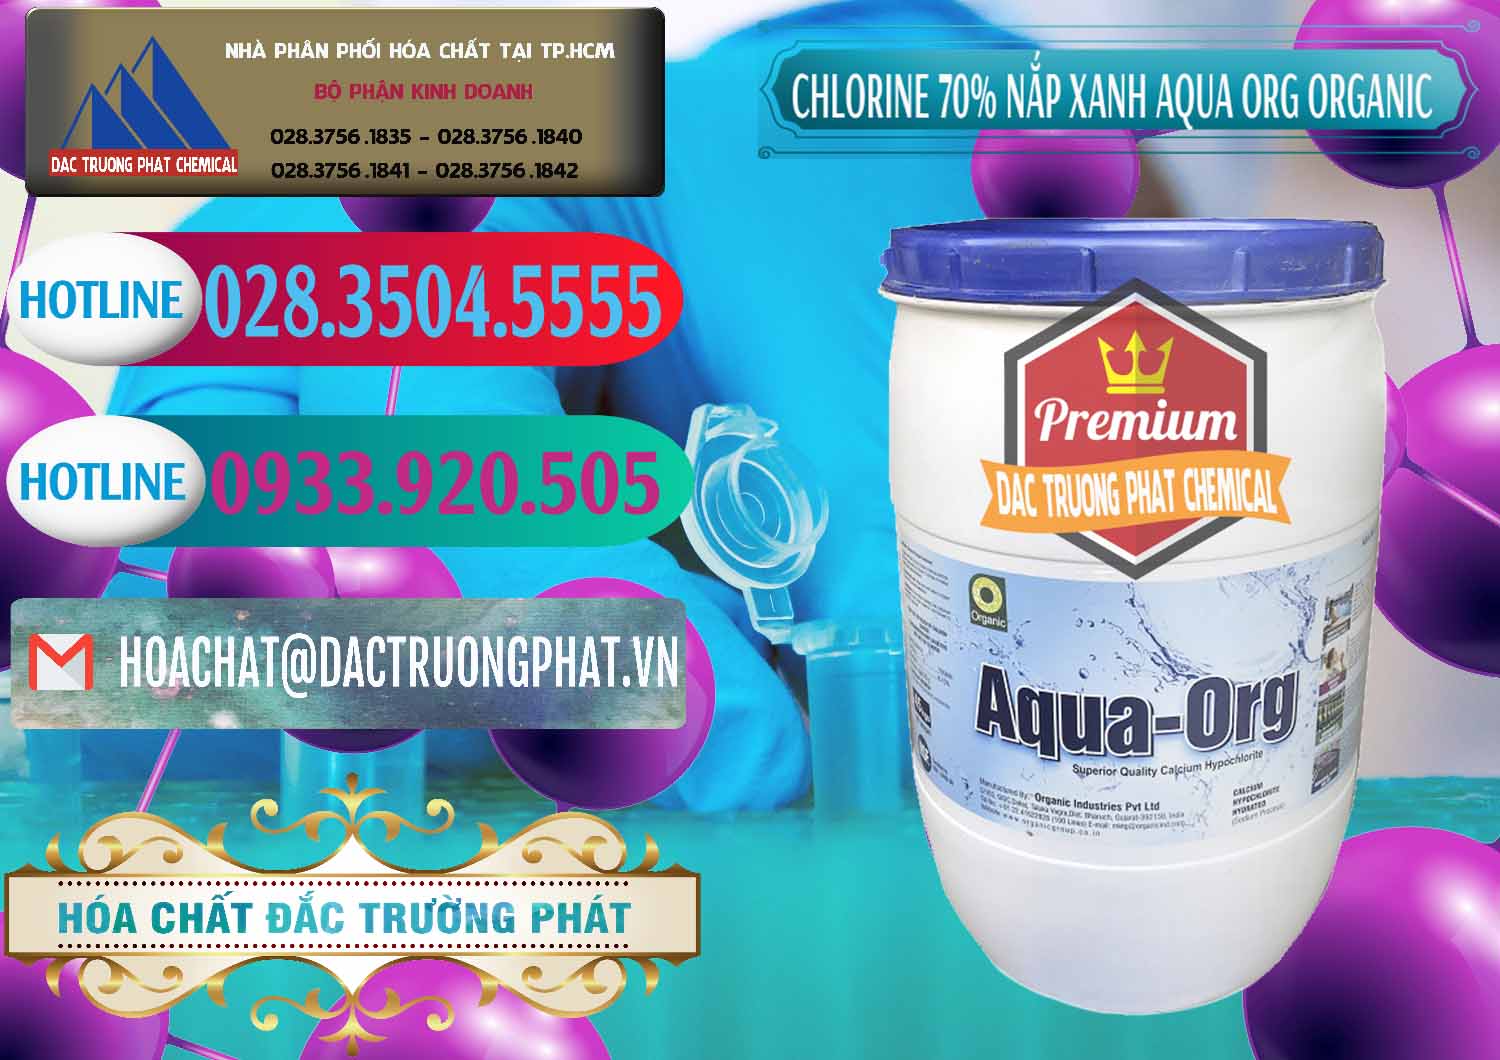 Nơi chuyên phân phối ( bán ) Chlorine – Clorin 70% Thùng Tròn Nắp Xanh Aqua ORG Organic Ấn Độ India - 0247 - Nhập khẩu & phân phối hóa chất tại TP.HCM - truongphat.vn